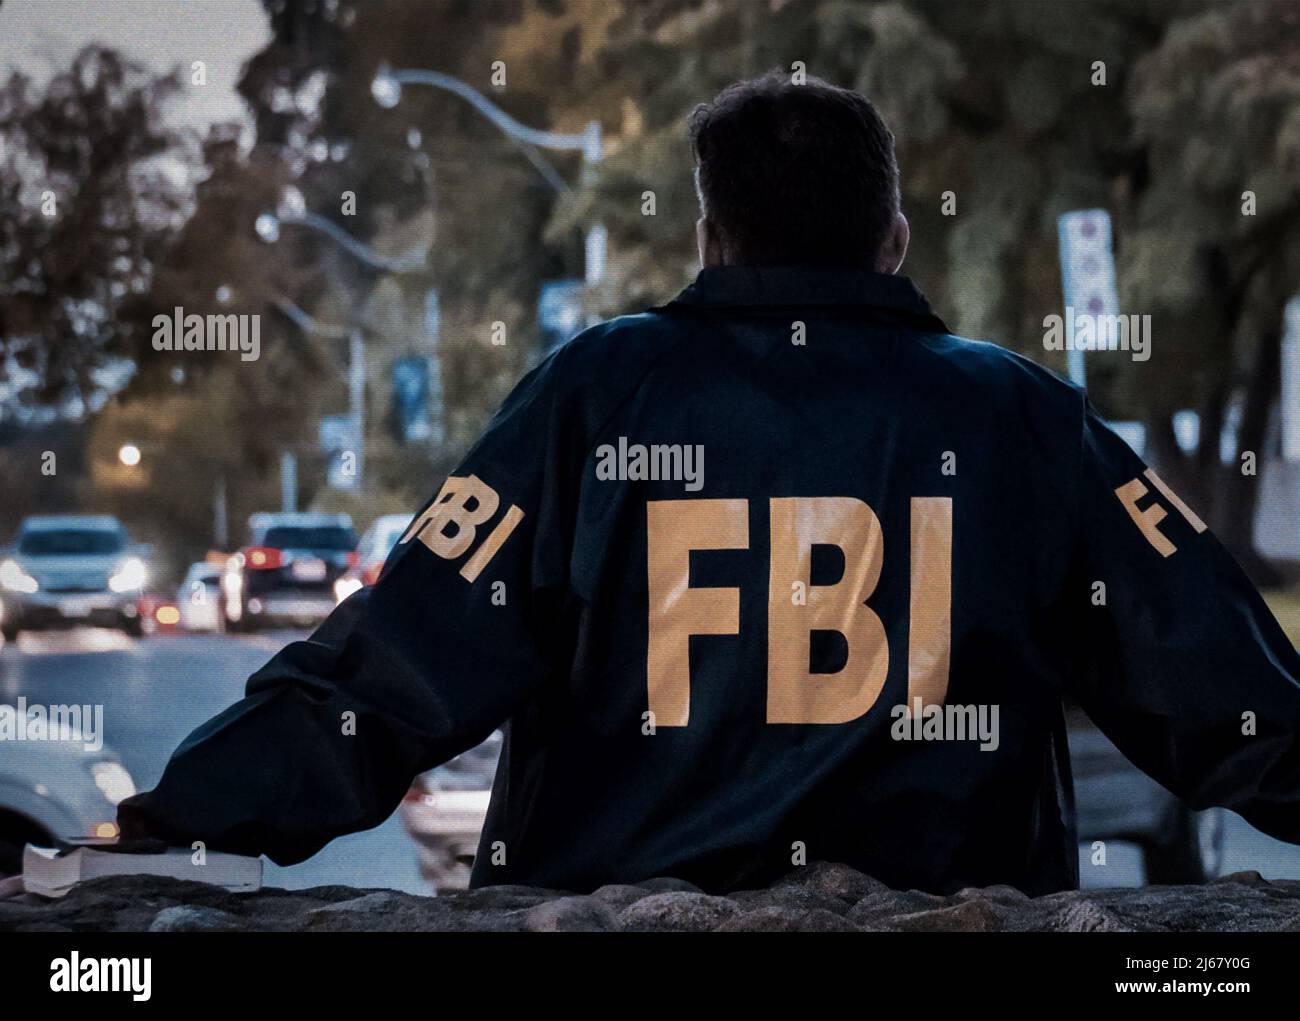 L'agent FBI mâle porte un manteau bleu foncé avec le logo FBI regardant  dans la rue avec des voitures au crépuscule vu de derrière Photo Stock -  Alamy